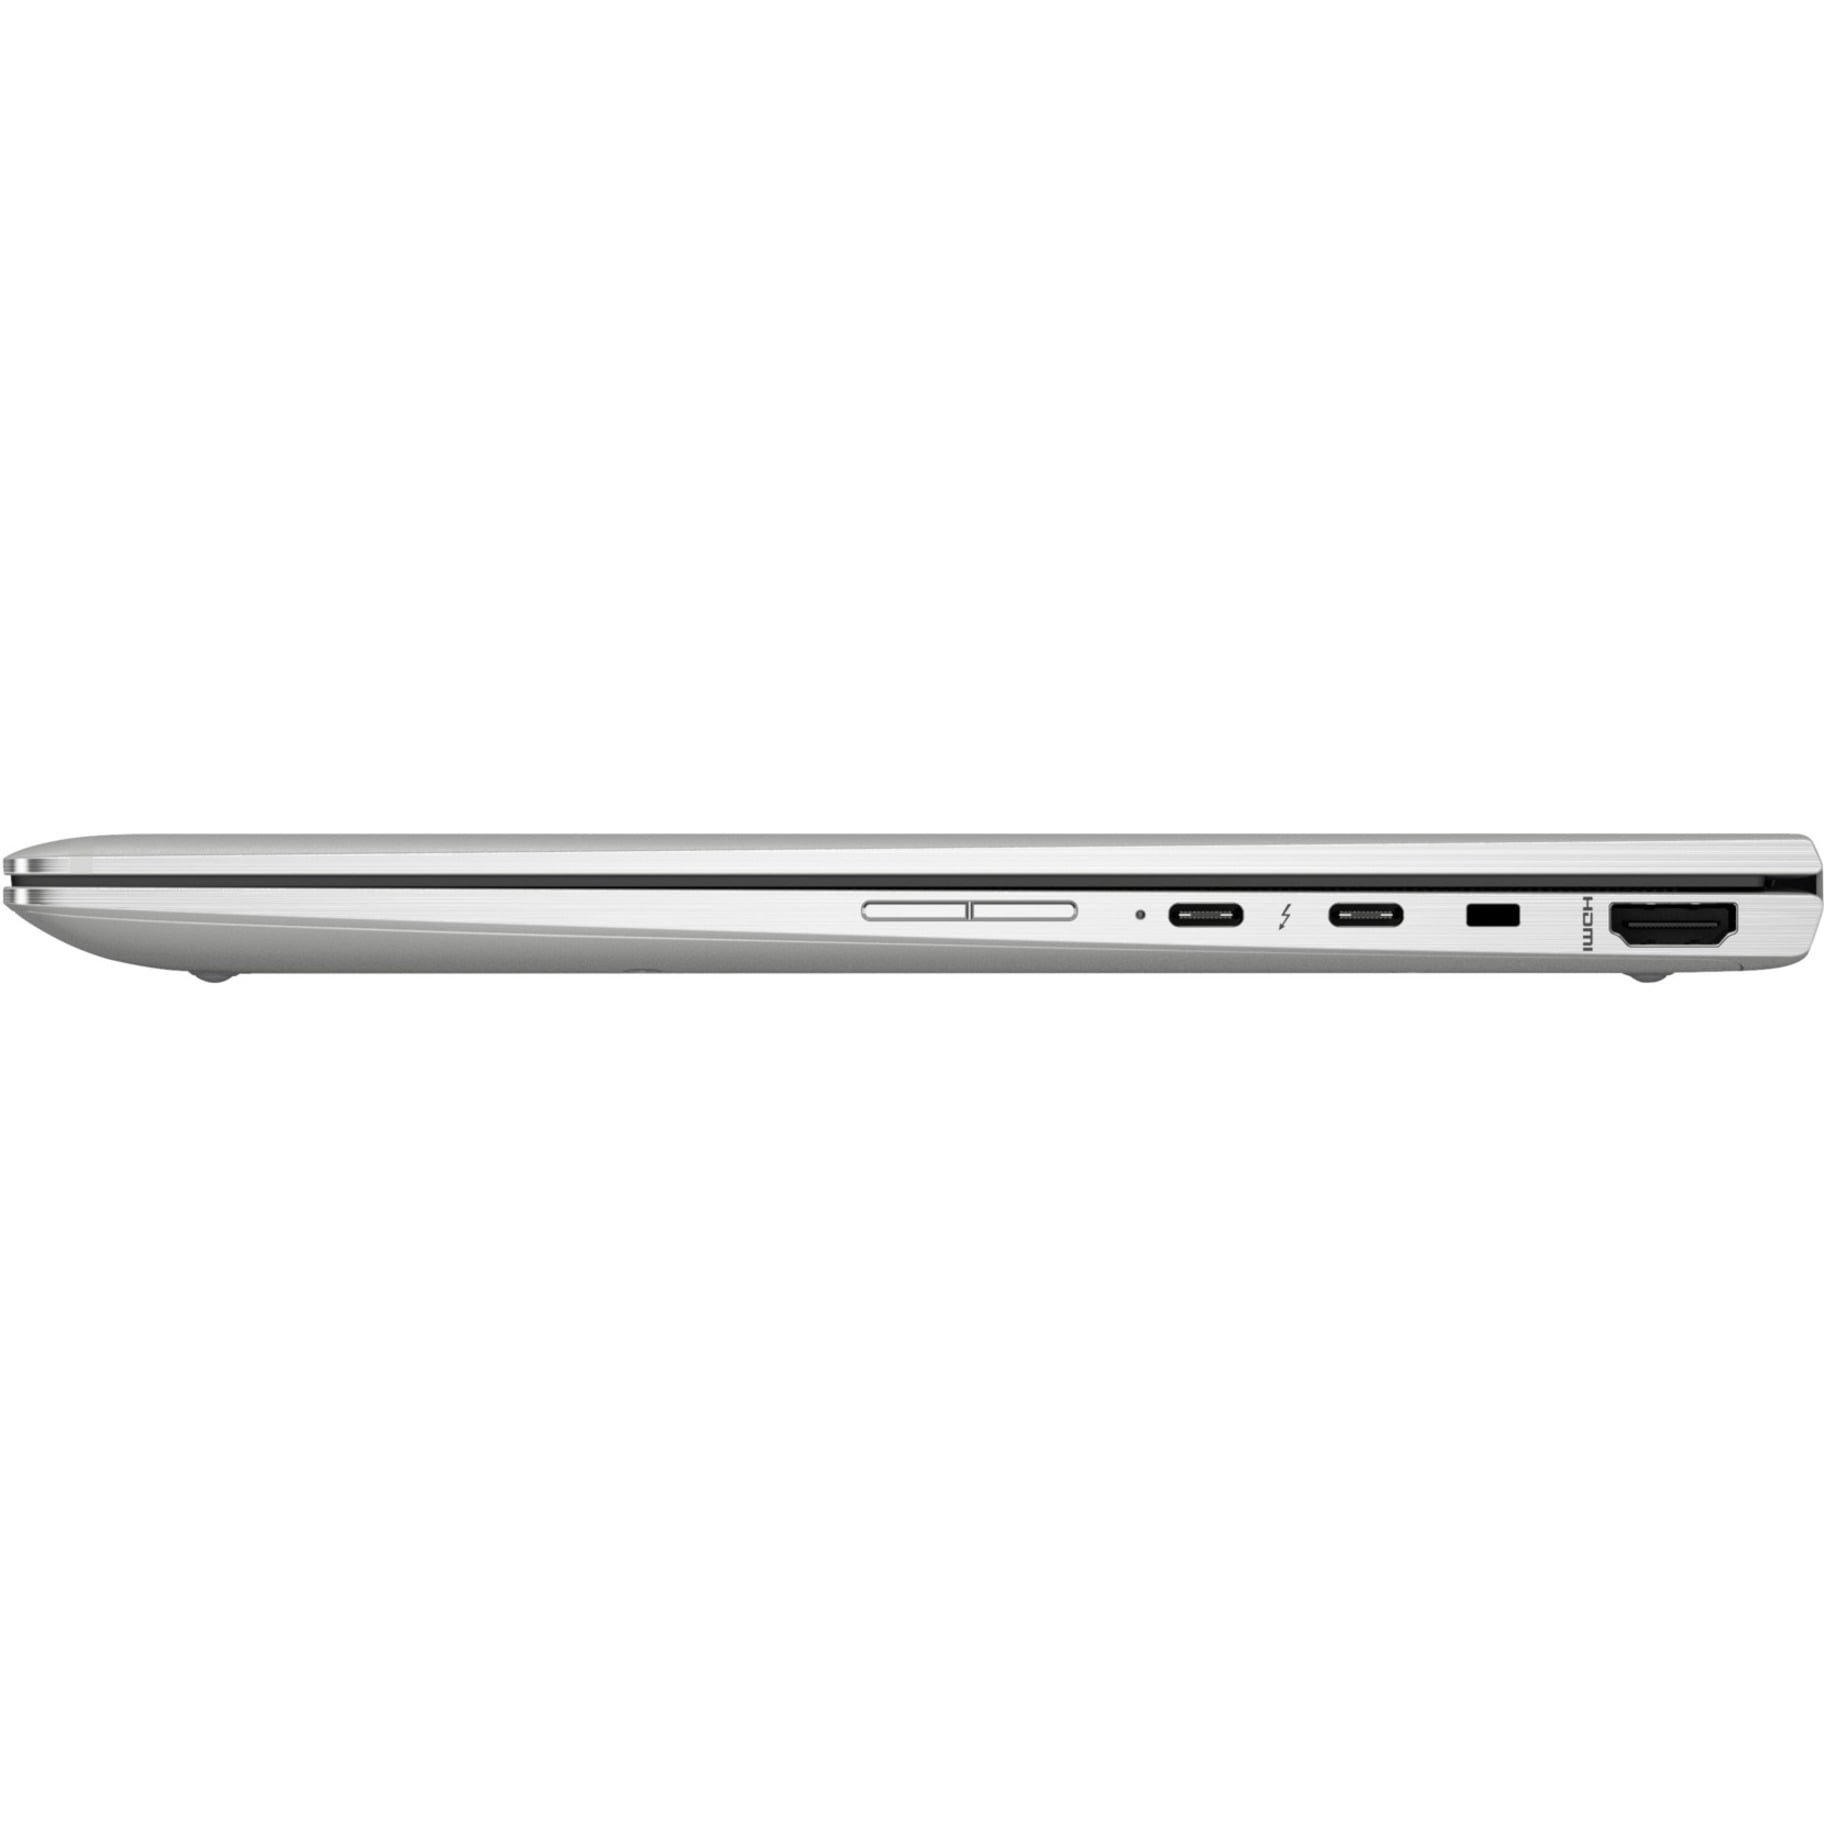 HP EliteBook x360 1030 G3 13.3